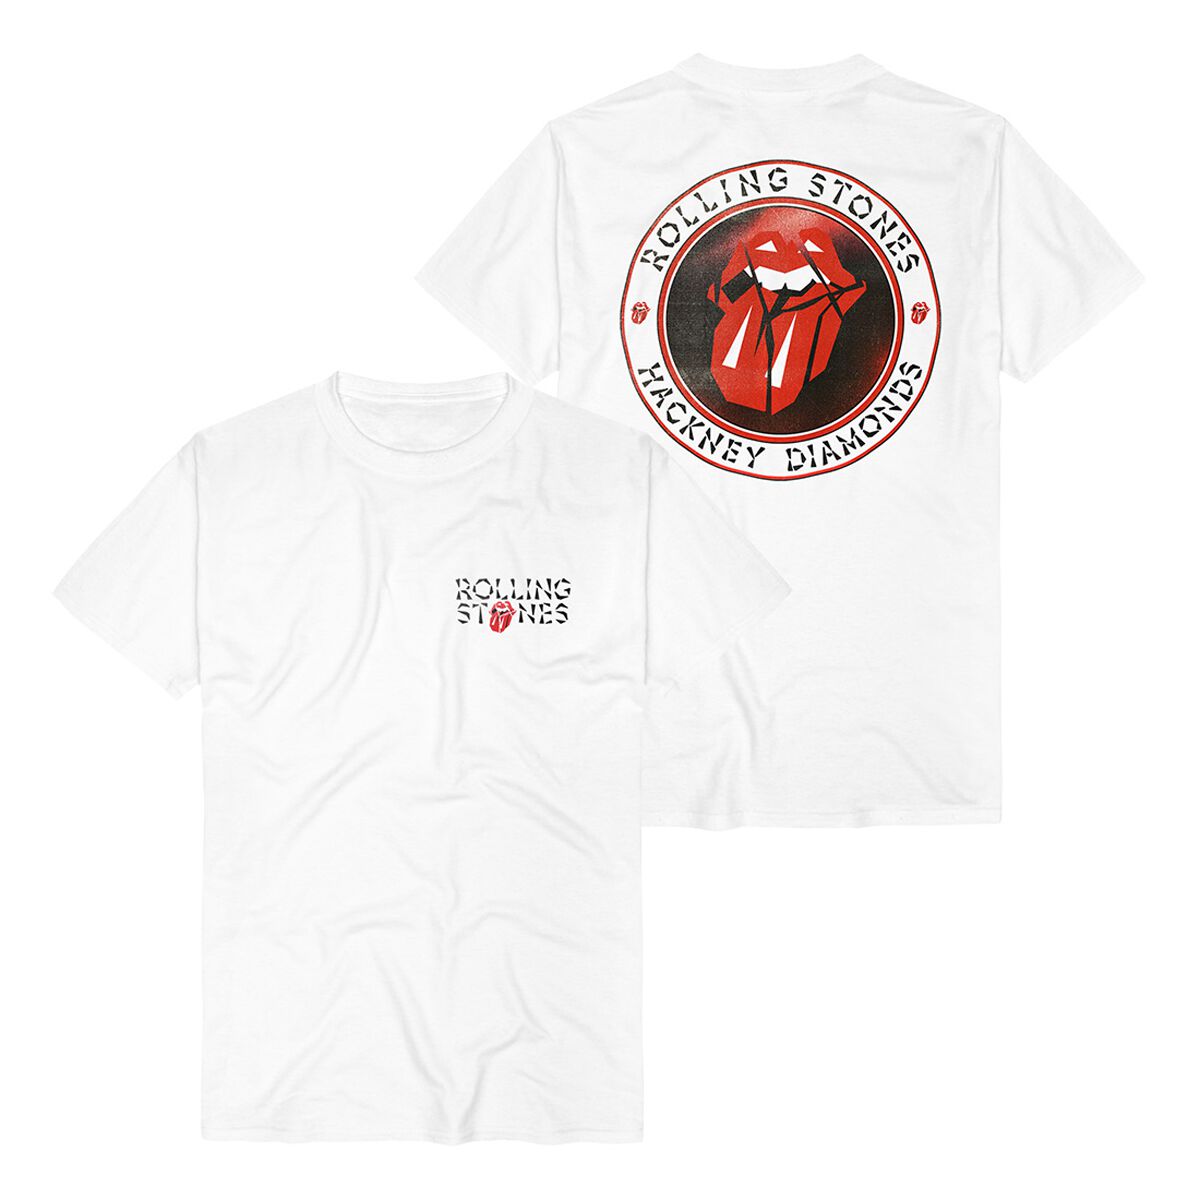 The Rolling Stones T-Shirt - Hackney Diamonds Circle Label - S bis 3XL - für Männer - Größe XXL - weiß  - Lizenziertes Merchandise!